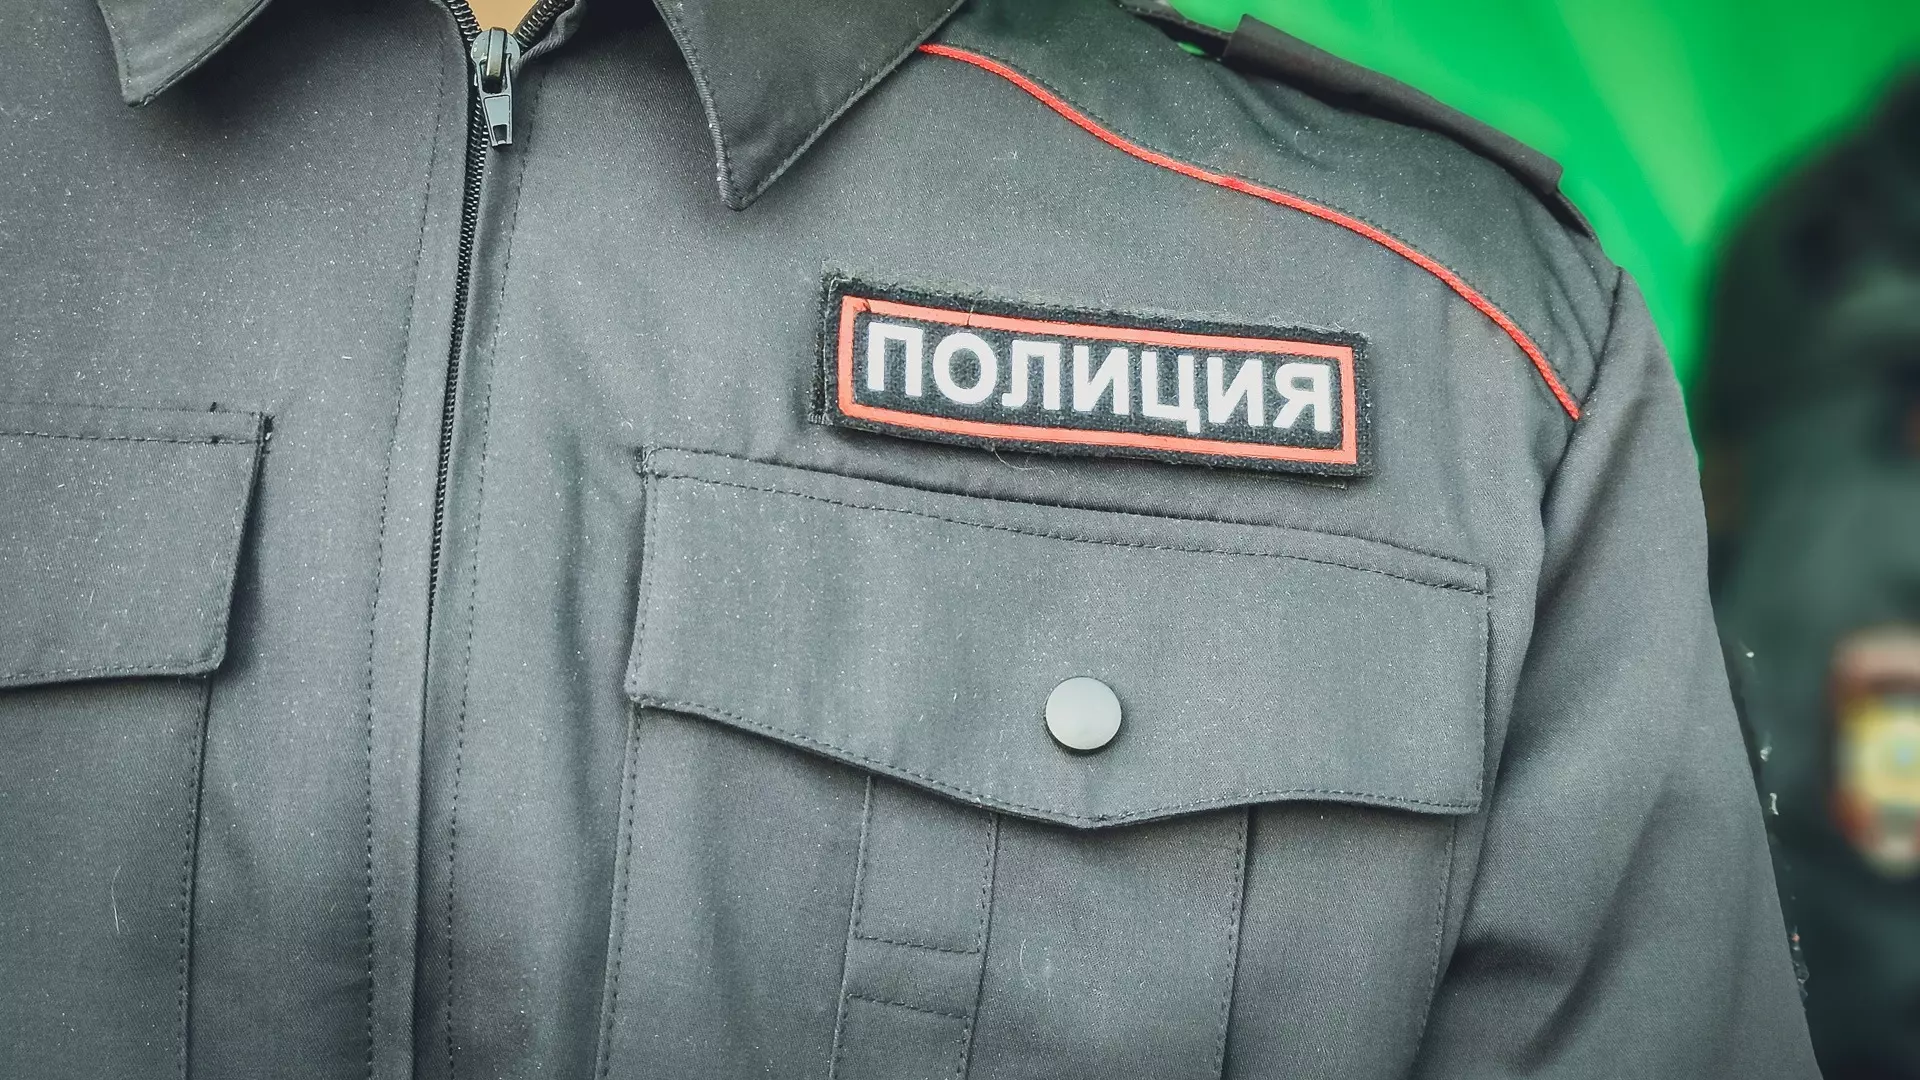 В Пермском крае задержали 34-летнего мужчину с героином в трусах